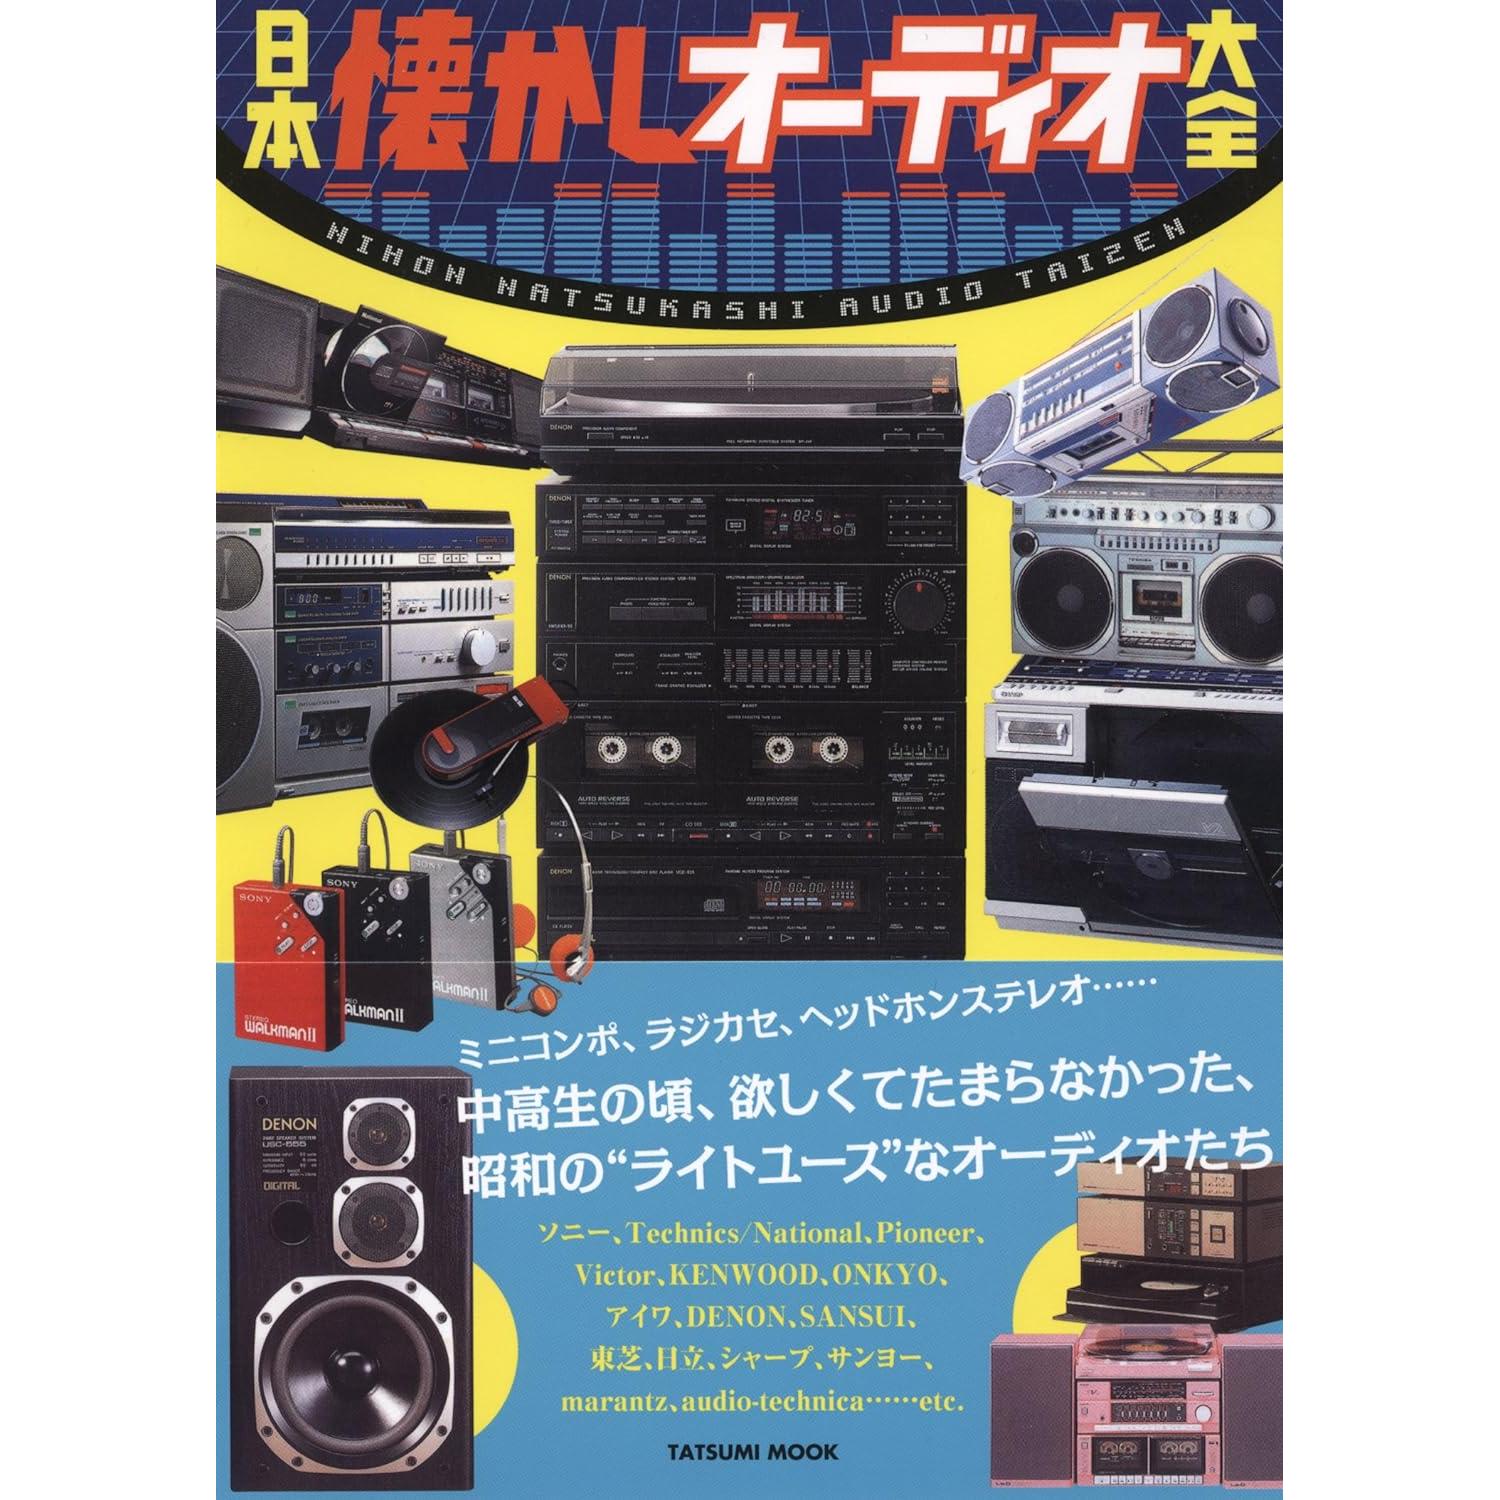 Japanese Audio catalog